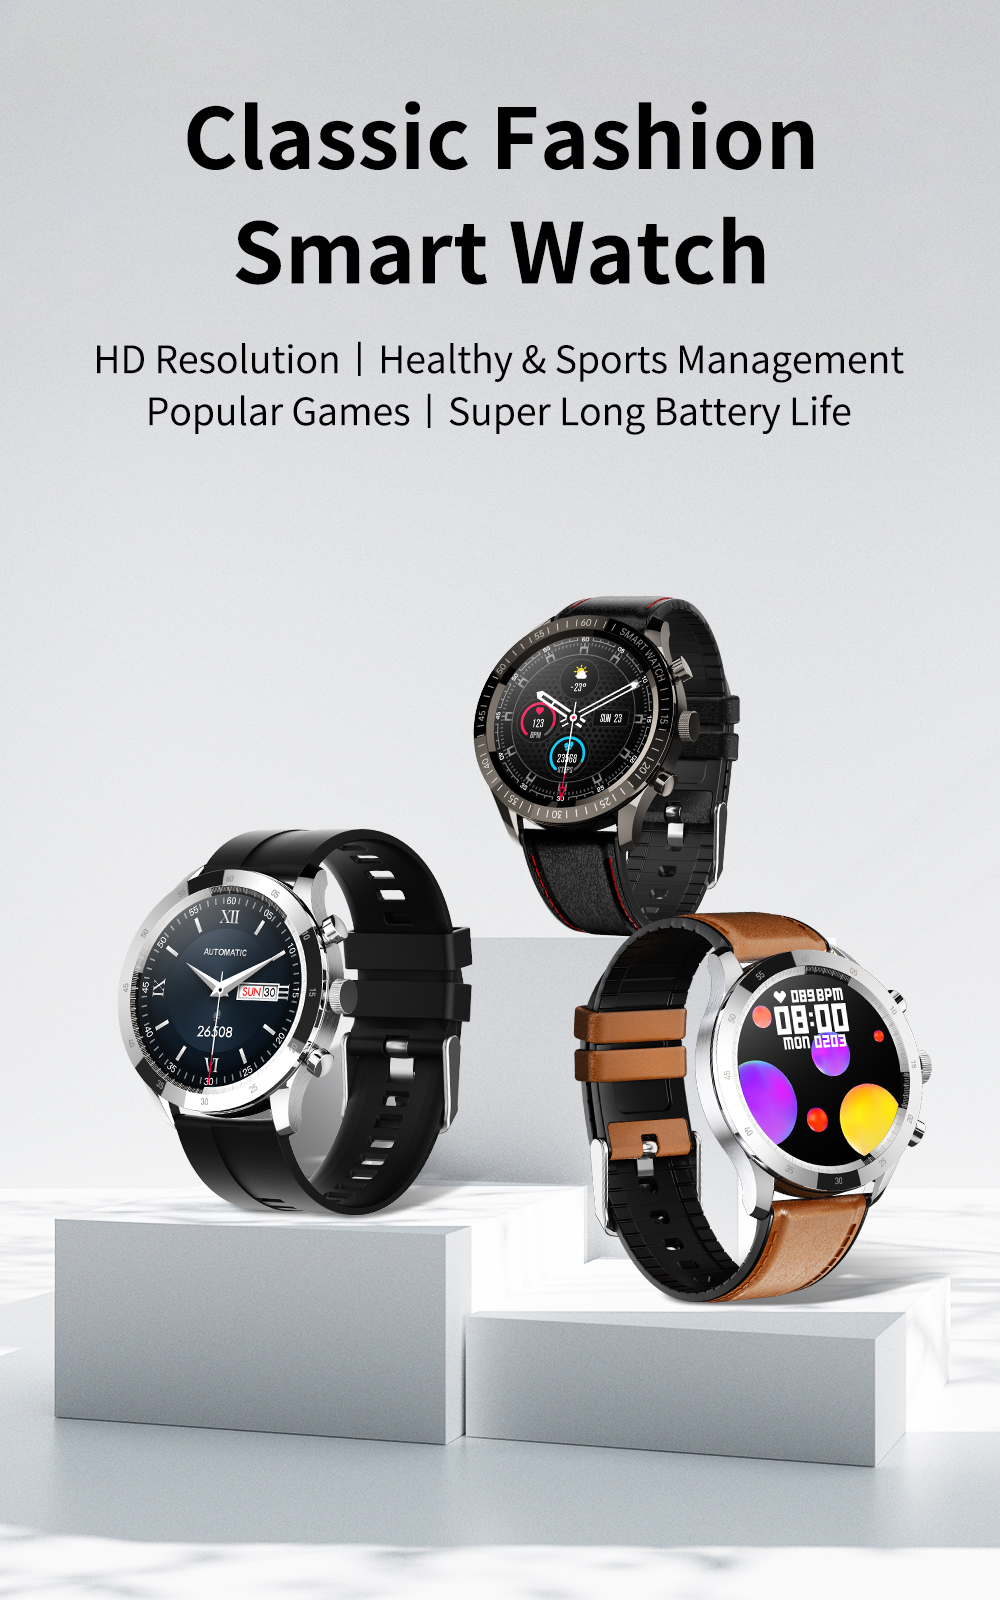 COLMI SKY 5 Plus 1,32 coloj Smart Watch 360360 Pixel HD Ekrano IP67 Akvorezista Fitness Tracker Smartwatch 1